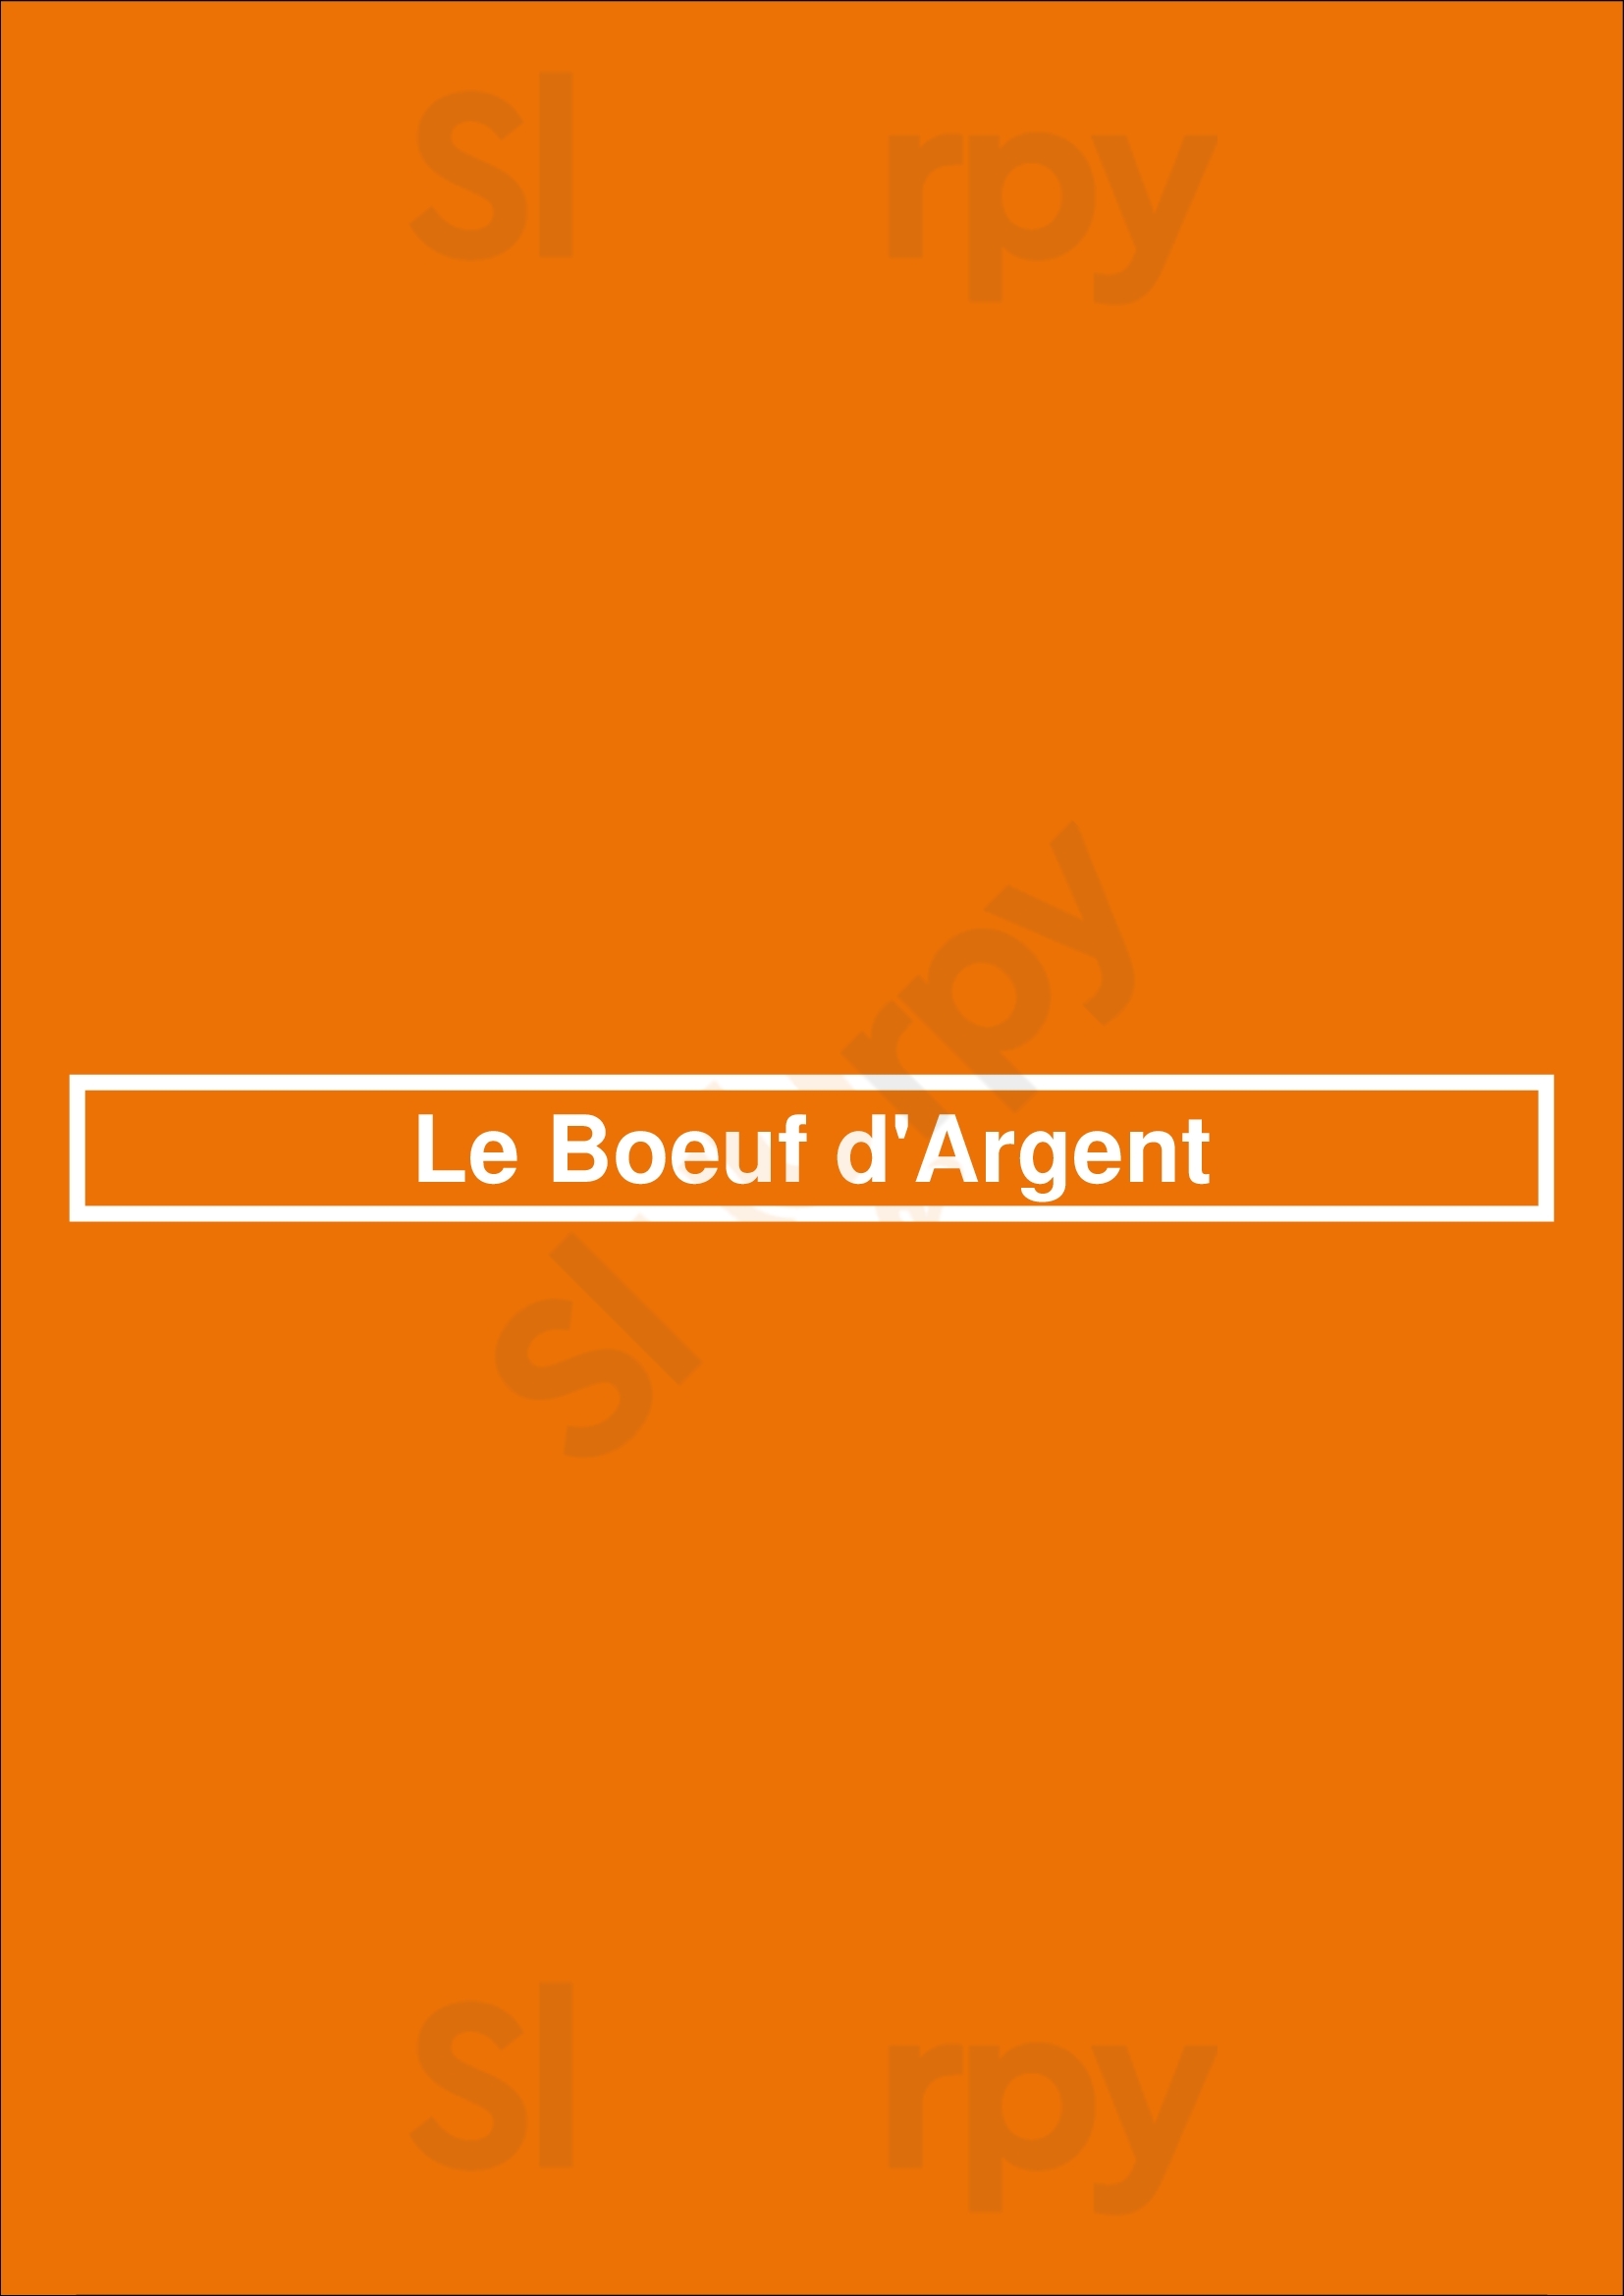 Le Boeuf D'argent Lyon Menu - 1